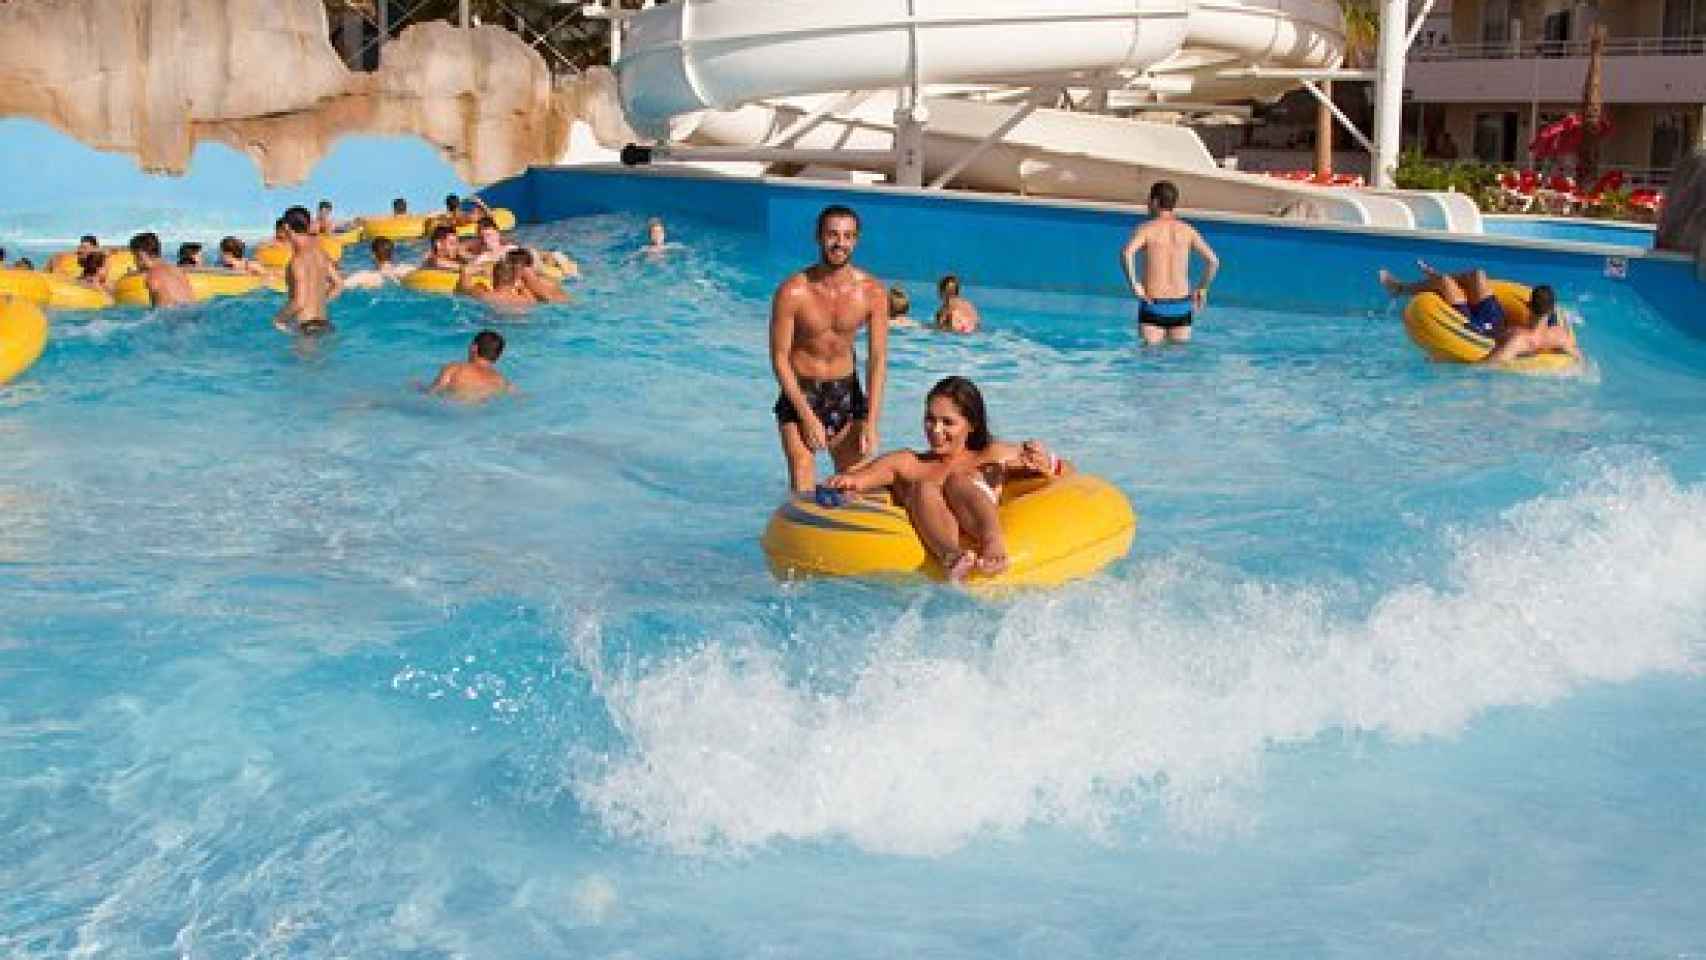 Imagen de la piscina de olas del establecimiento hotelero BH Mallorca